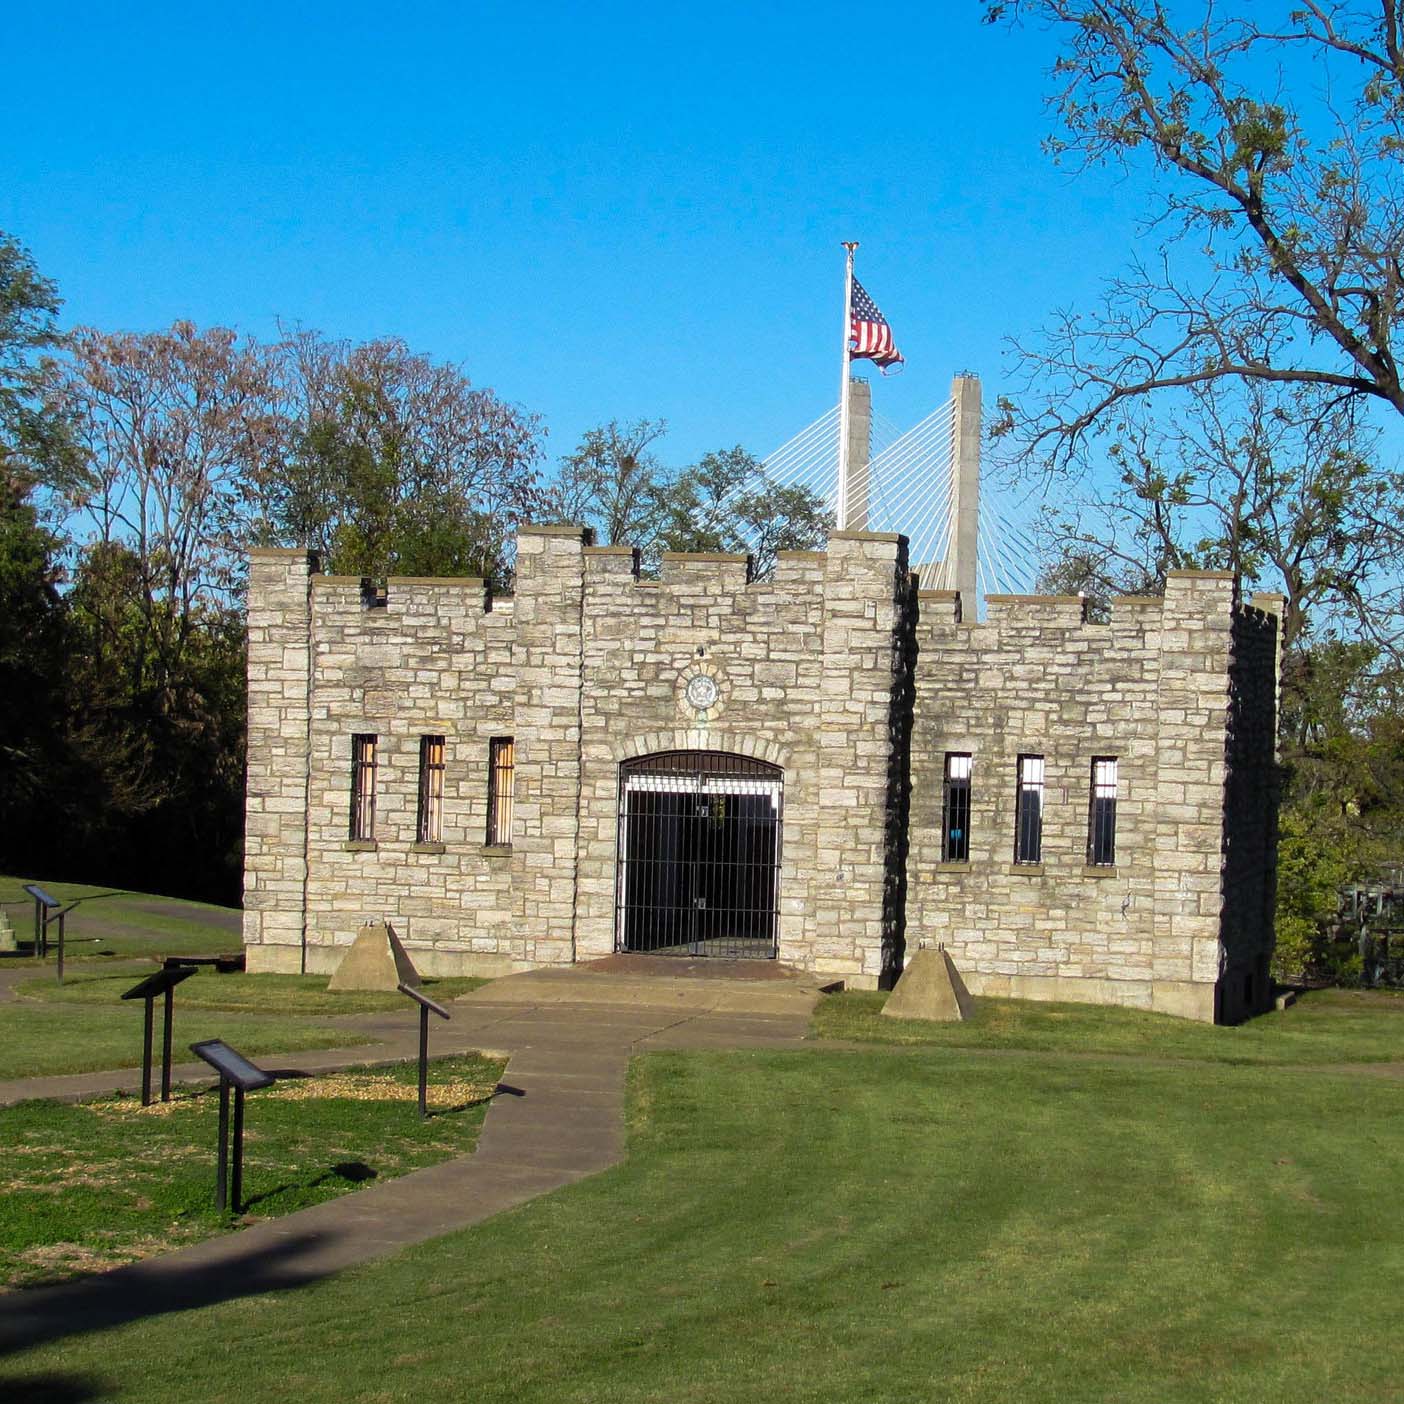 A historical site located in Cape Girardeau, Missouri